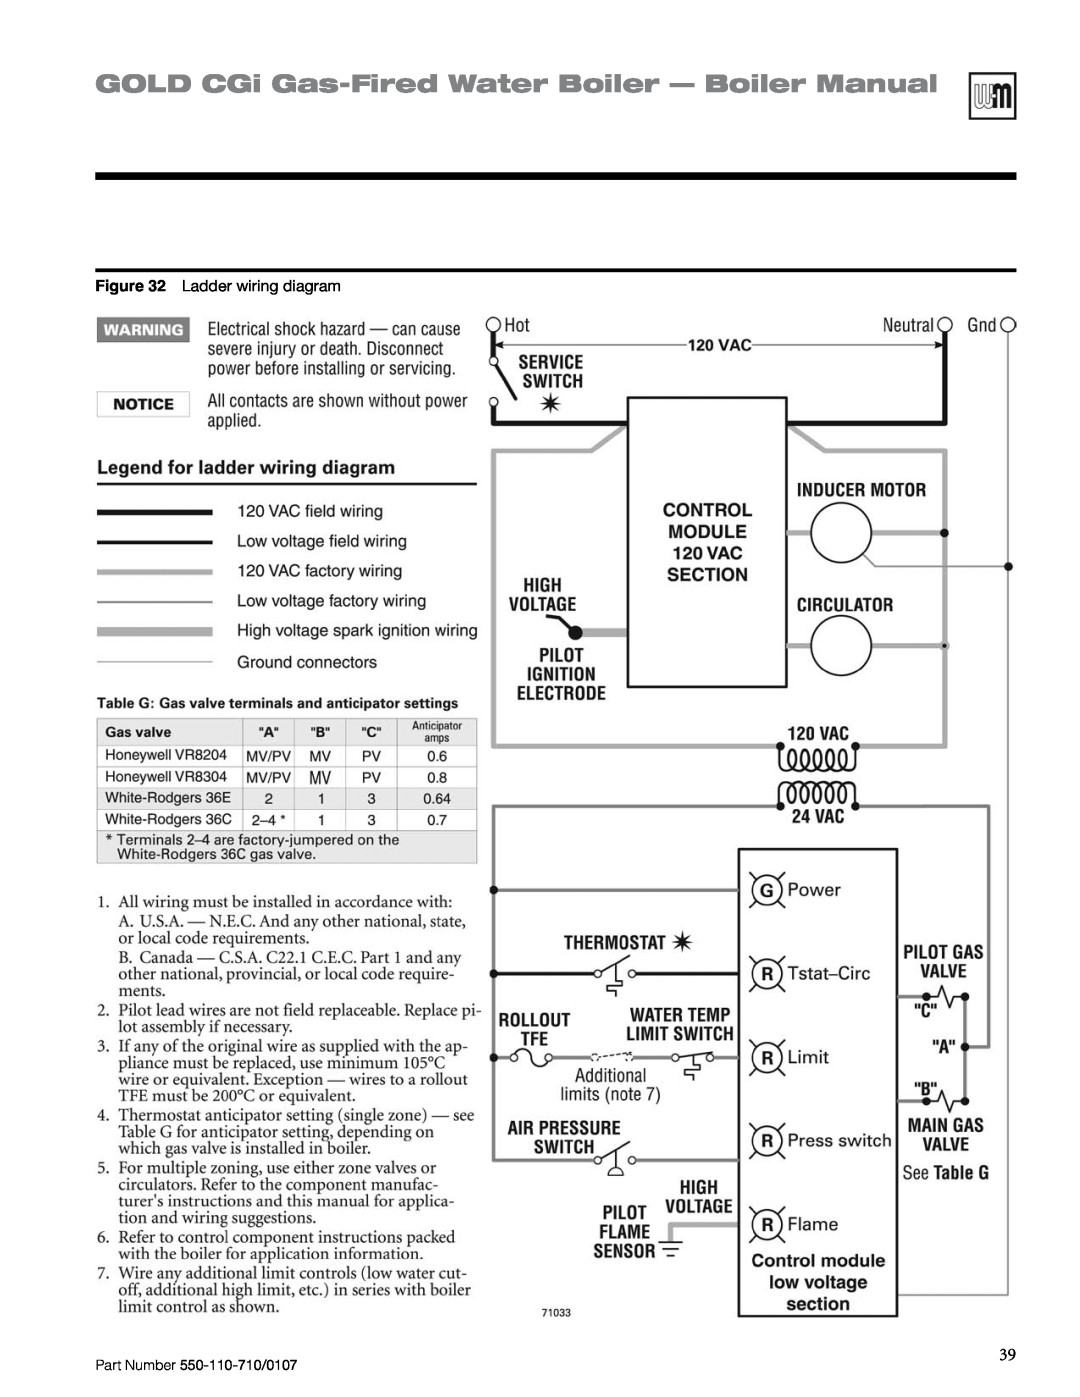 Weil-McLain Series 2 manual GOLD CGi Gas-FiredWater Boiler - Boiler Manual, Ladder wiring diagram 